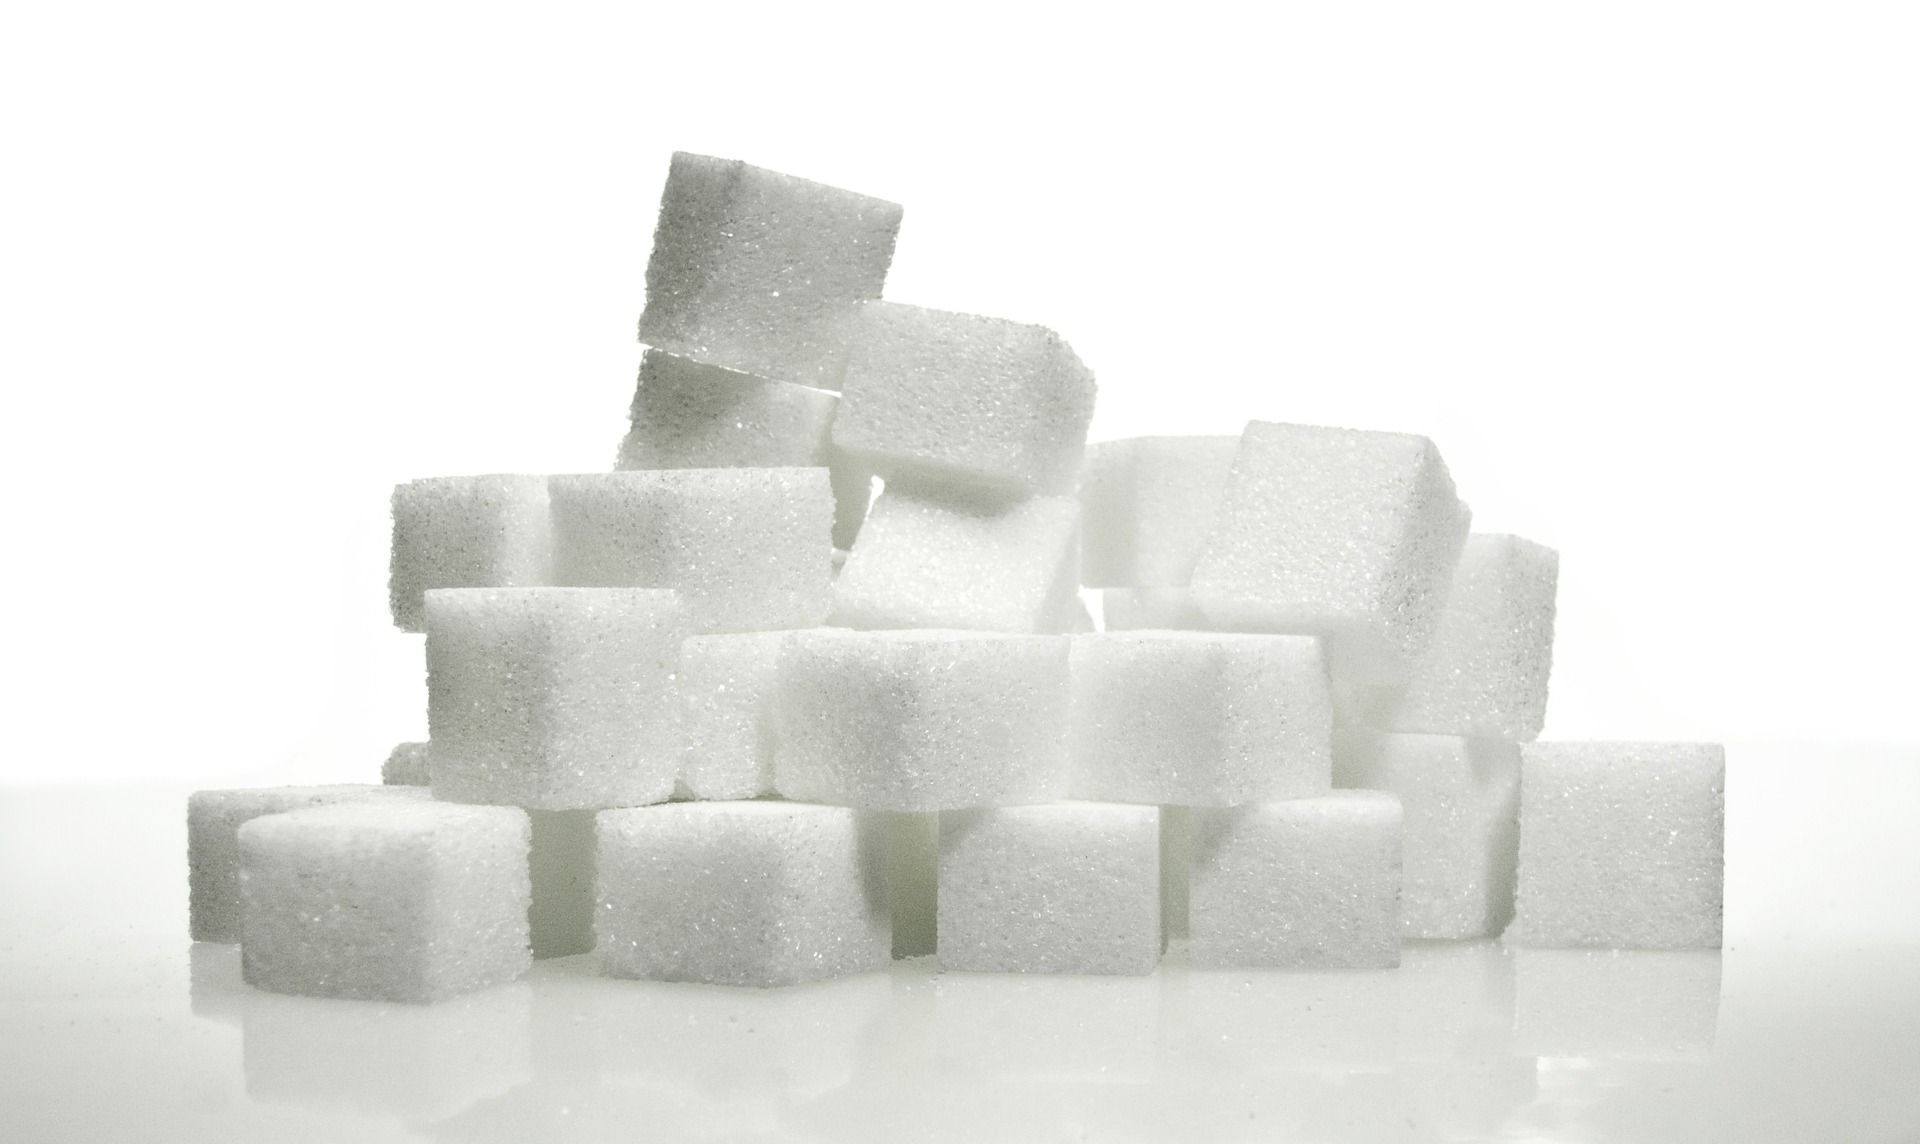 Cukry proste – czy rzeczywiście są szkodliwe? Wpływ cukru na zdrowie